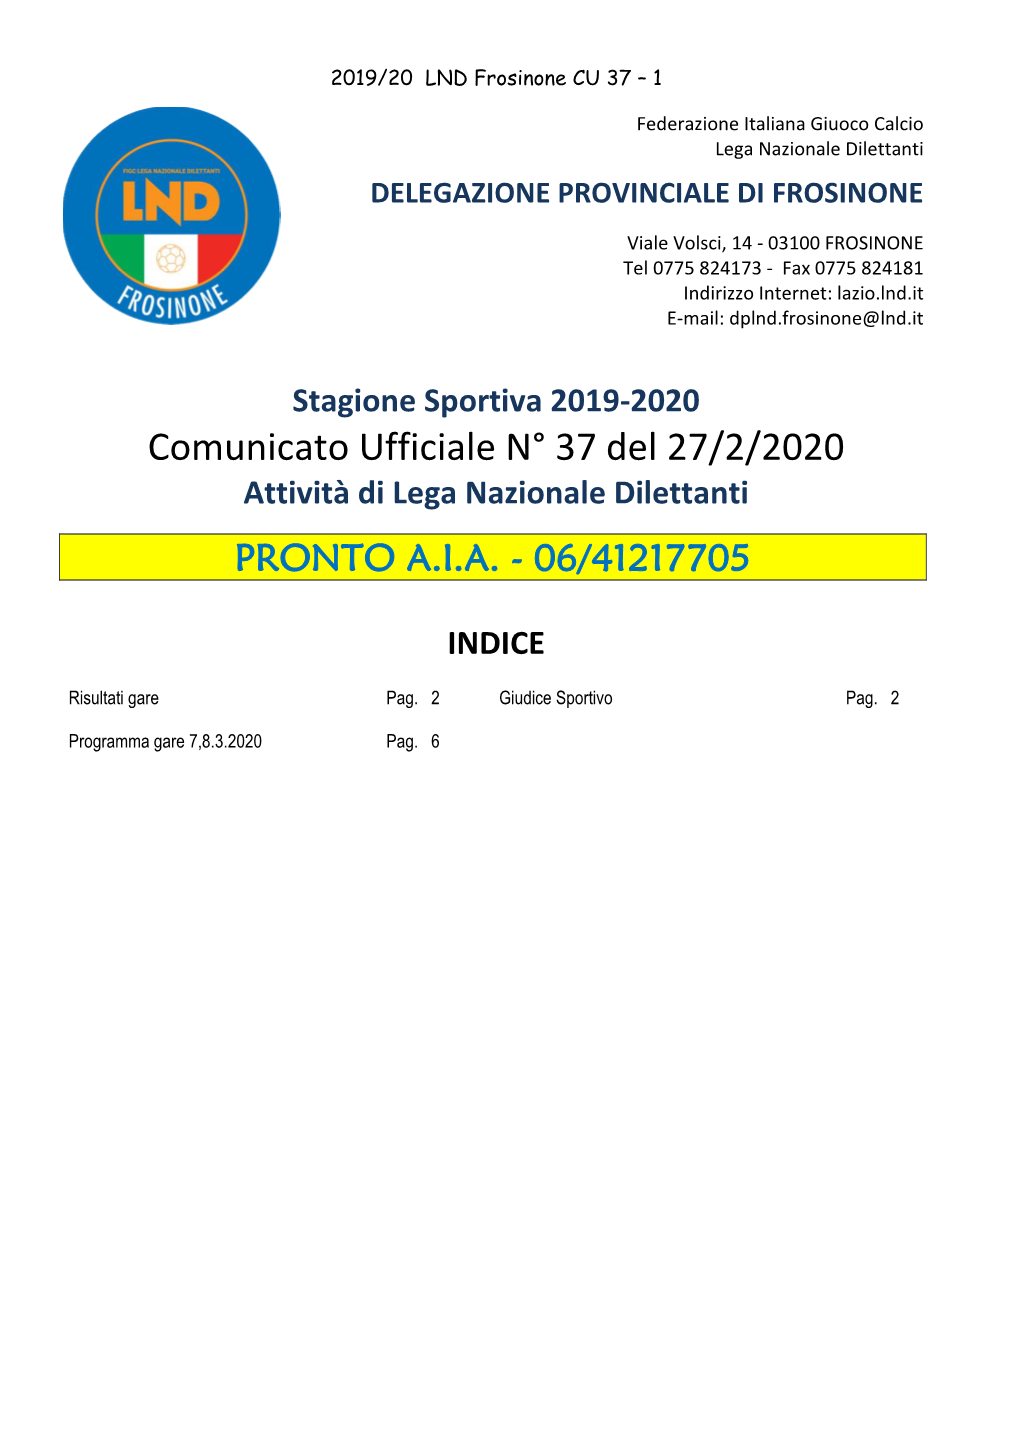 Comunicato Ufficiale N° 37 Del 27/2/2020 Attività Di Lega Nazionale Dilettanti